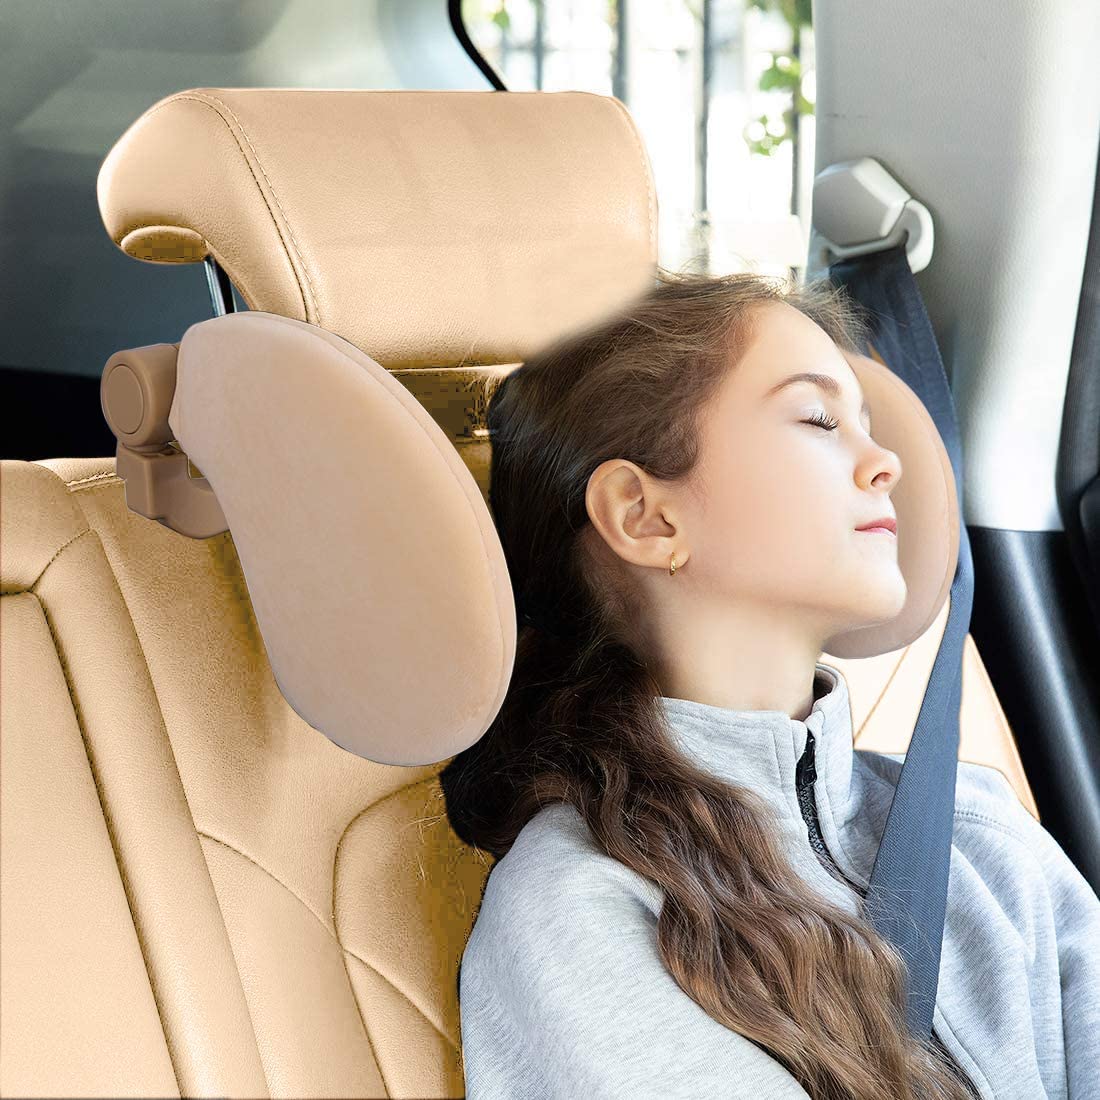 Car Headrest™ – TheBloomCar™